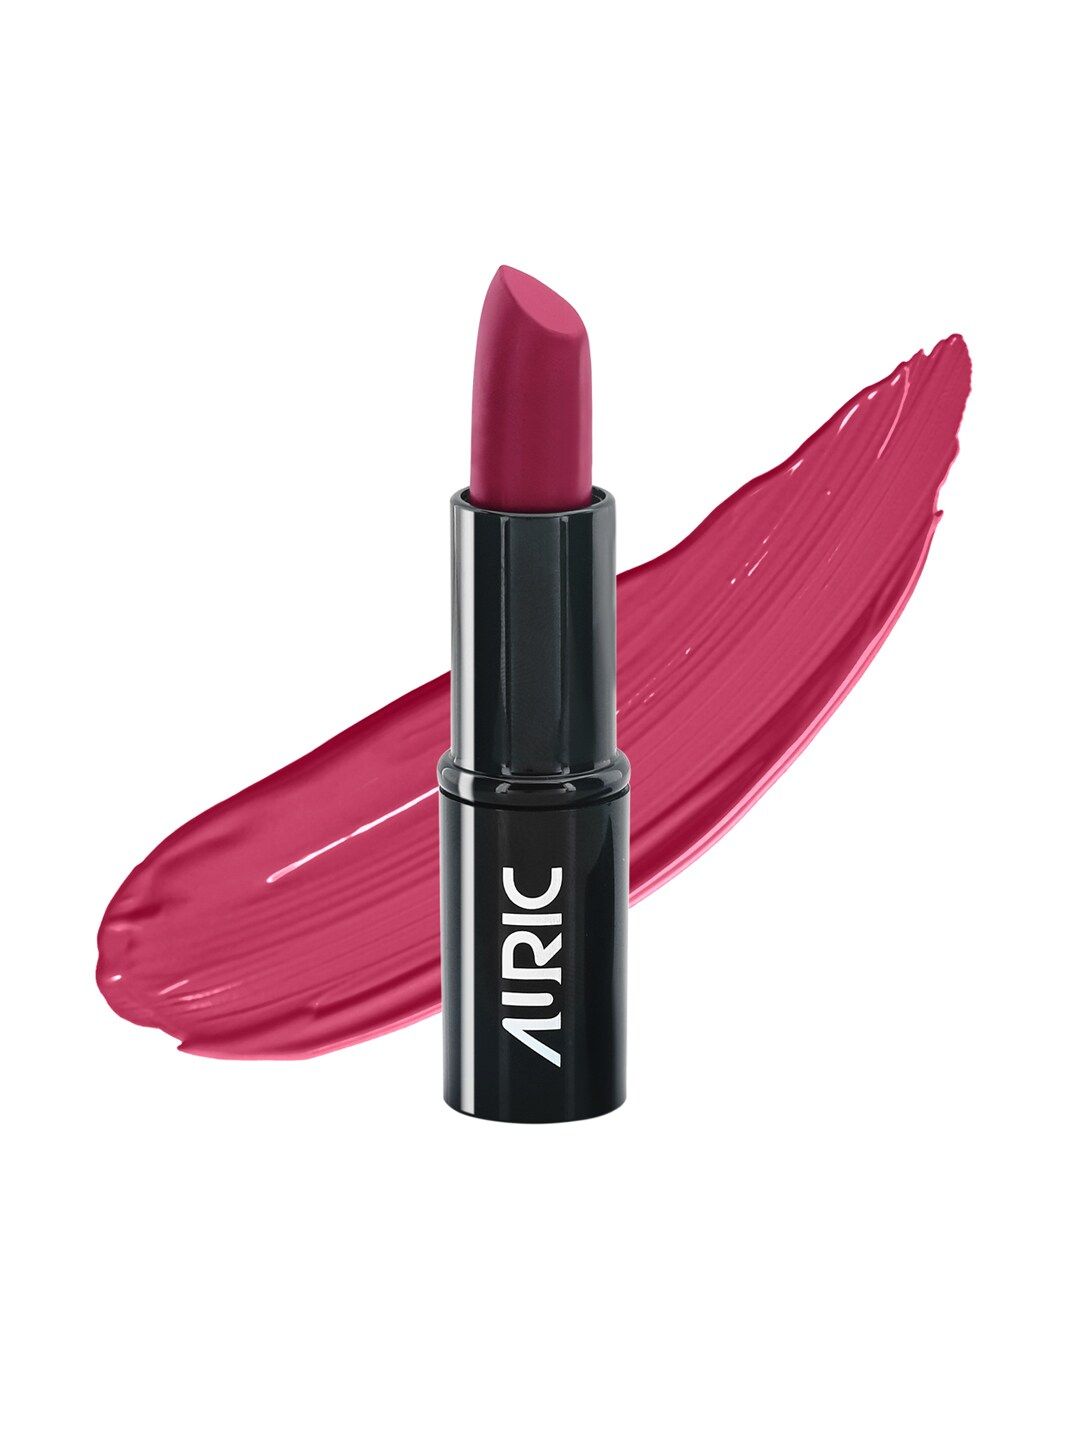 AURIC MoistureLock Lipstick Cranberry Fizz 3105 4 g Price in India